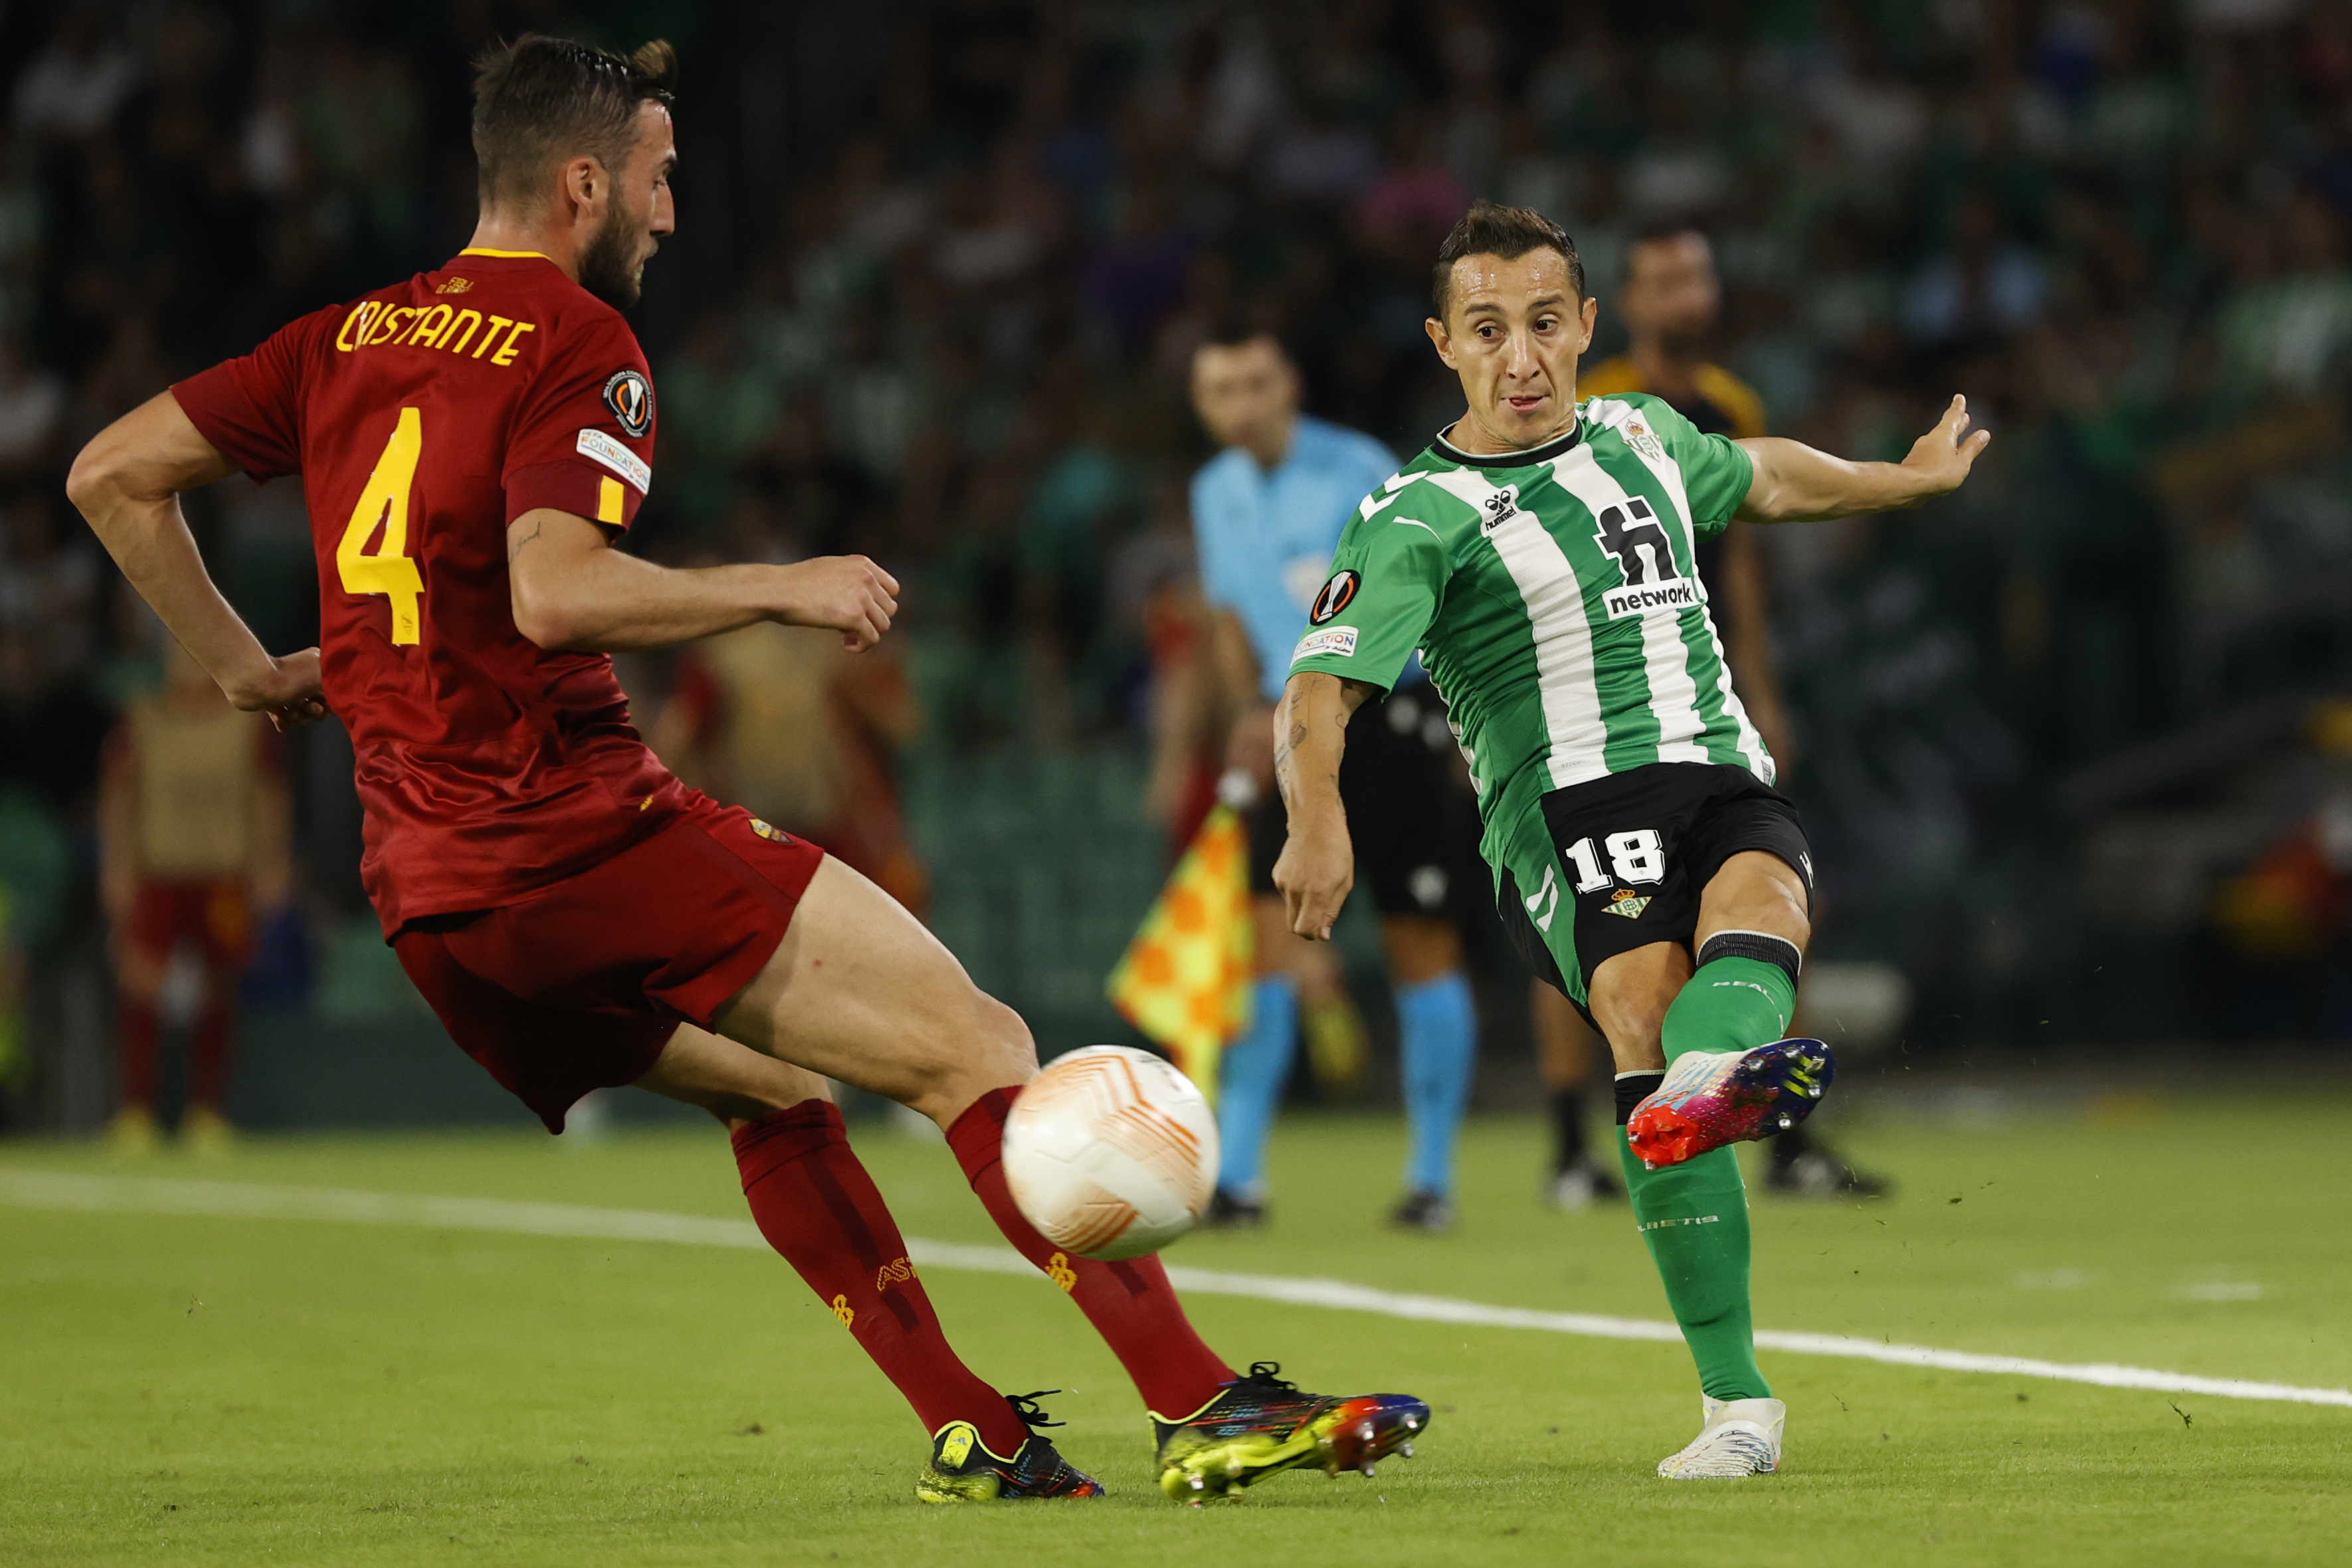 El Betis empata con la Roma y se clasifica para la siguiente fase de la Europa League (1-1)